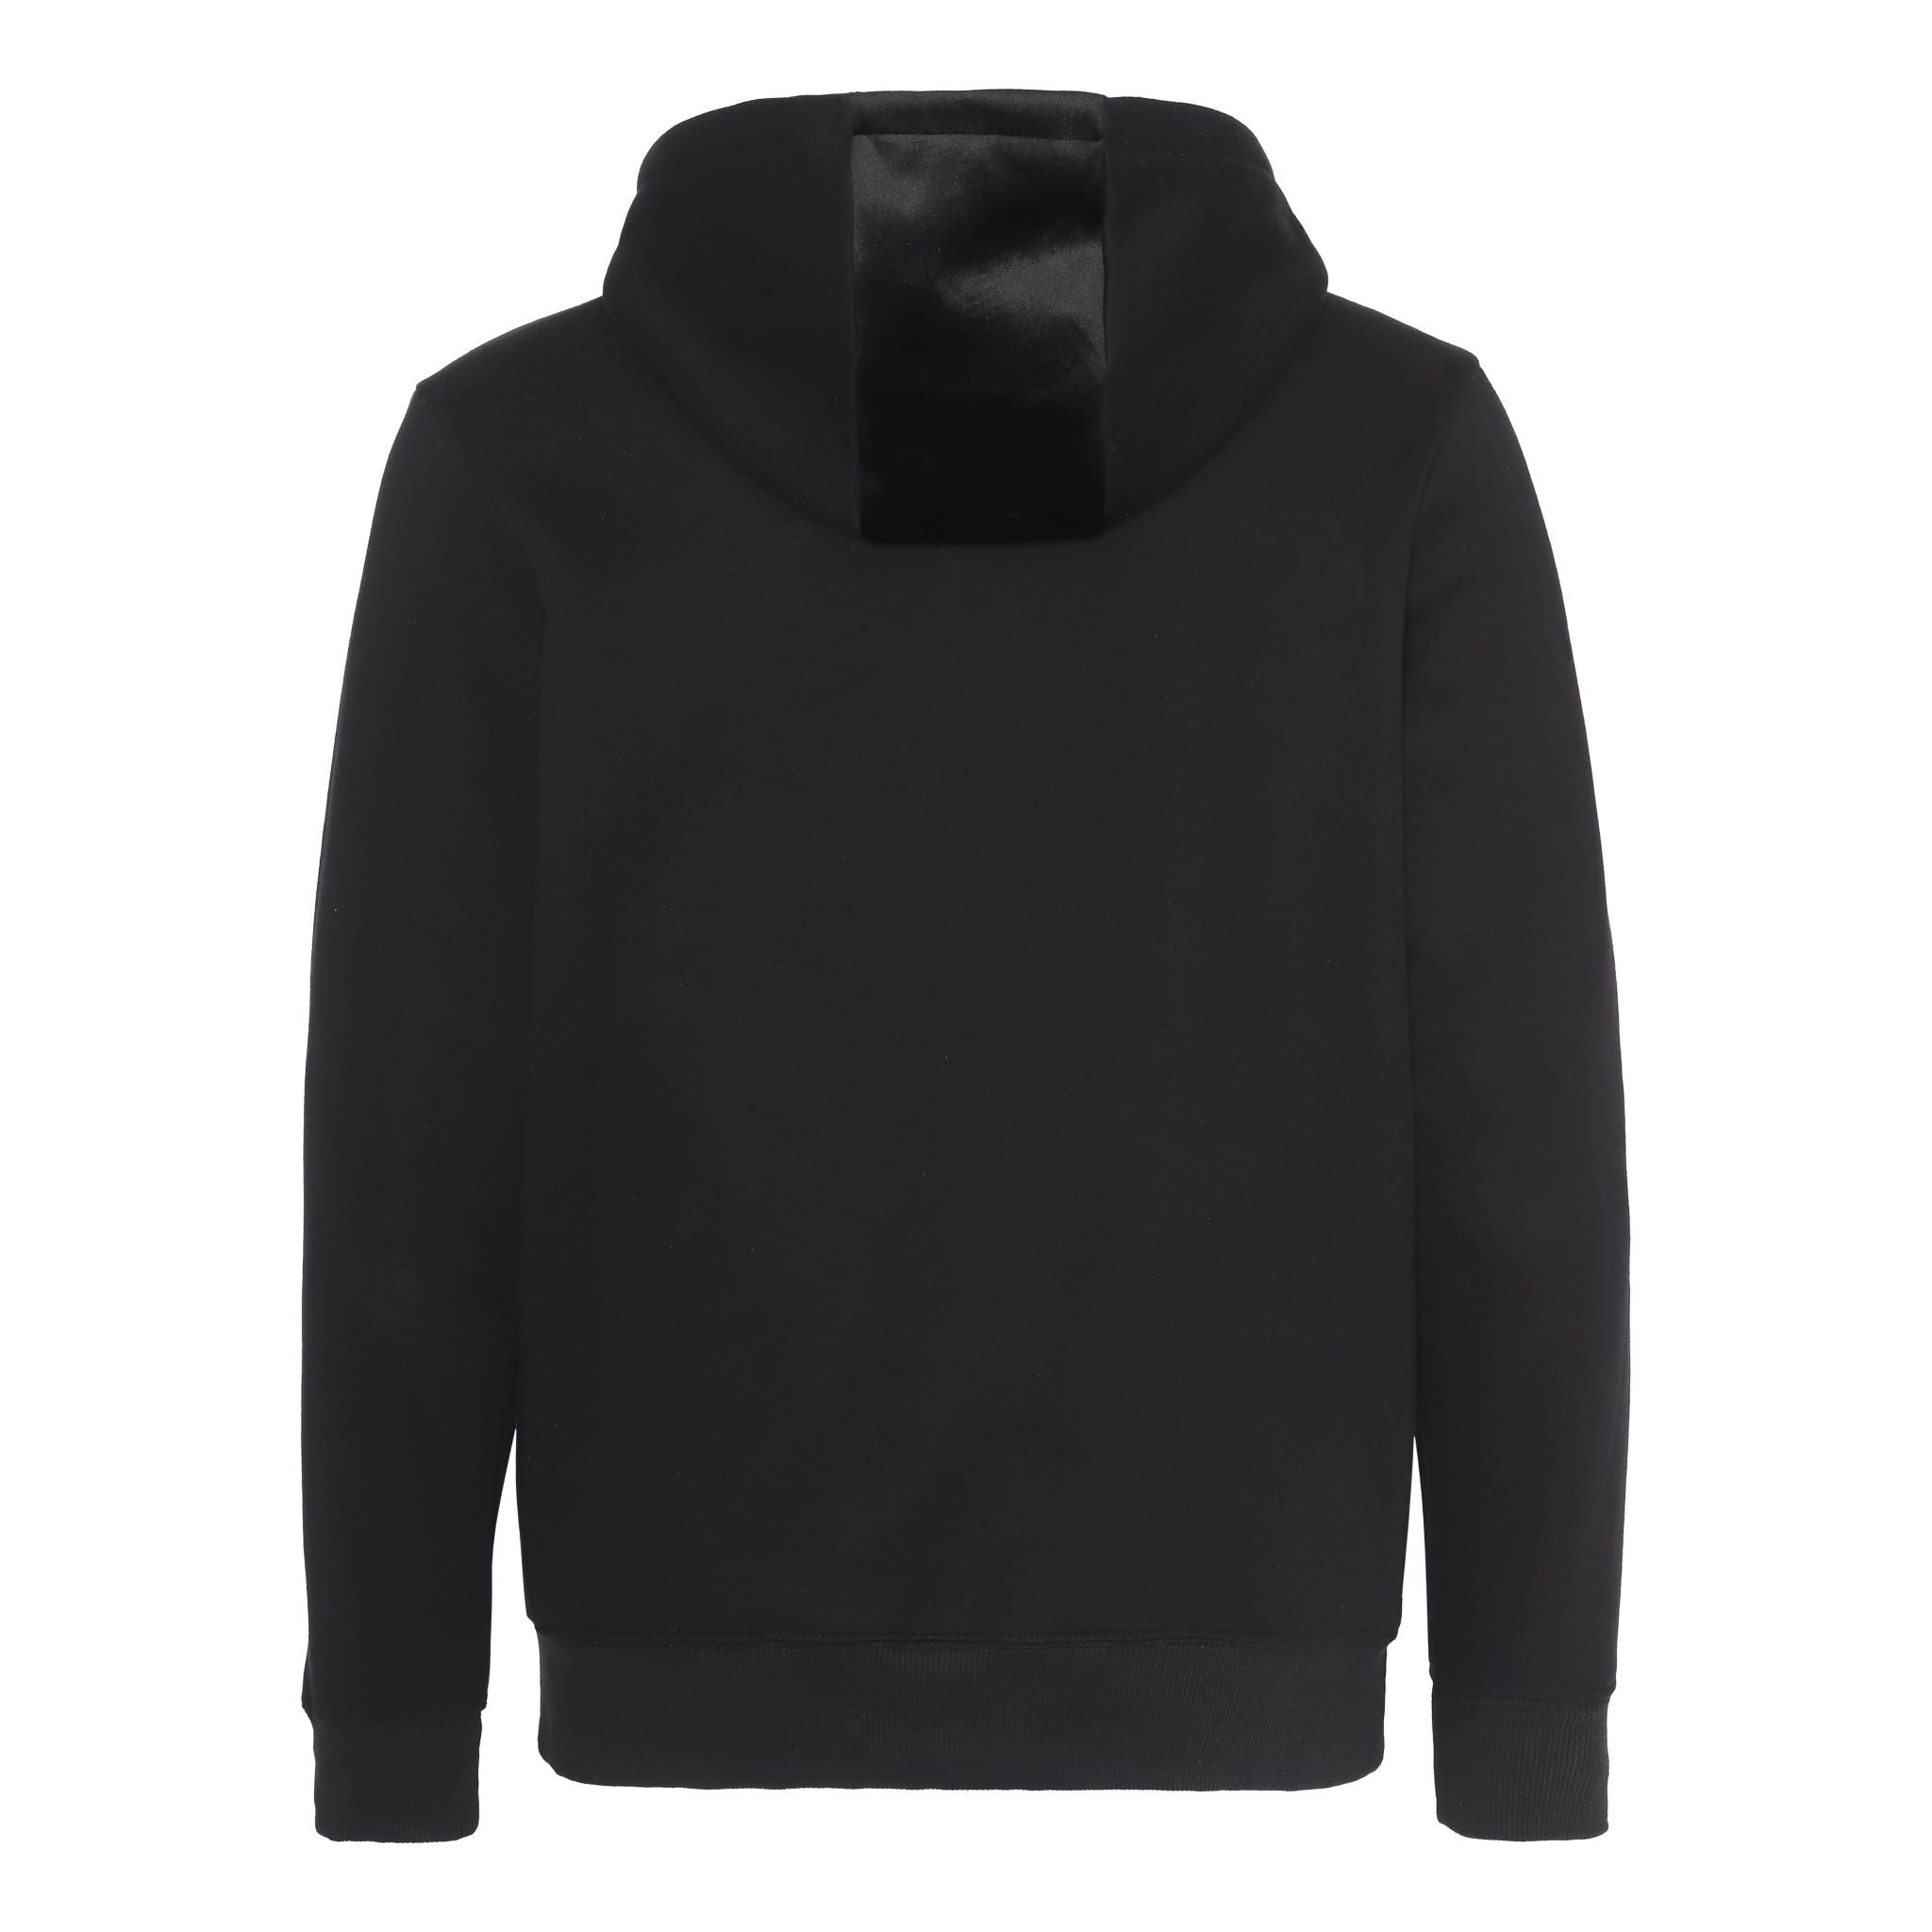 Black hoodie with black velour